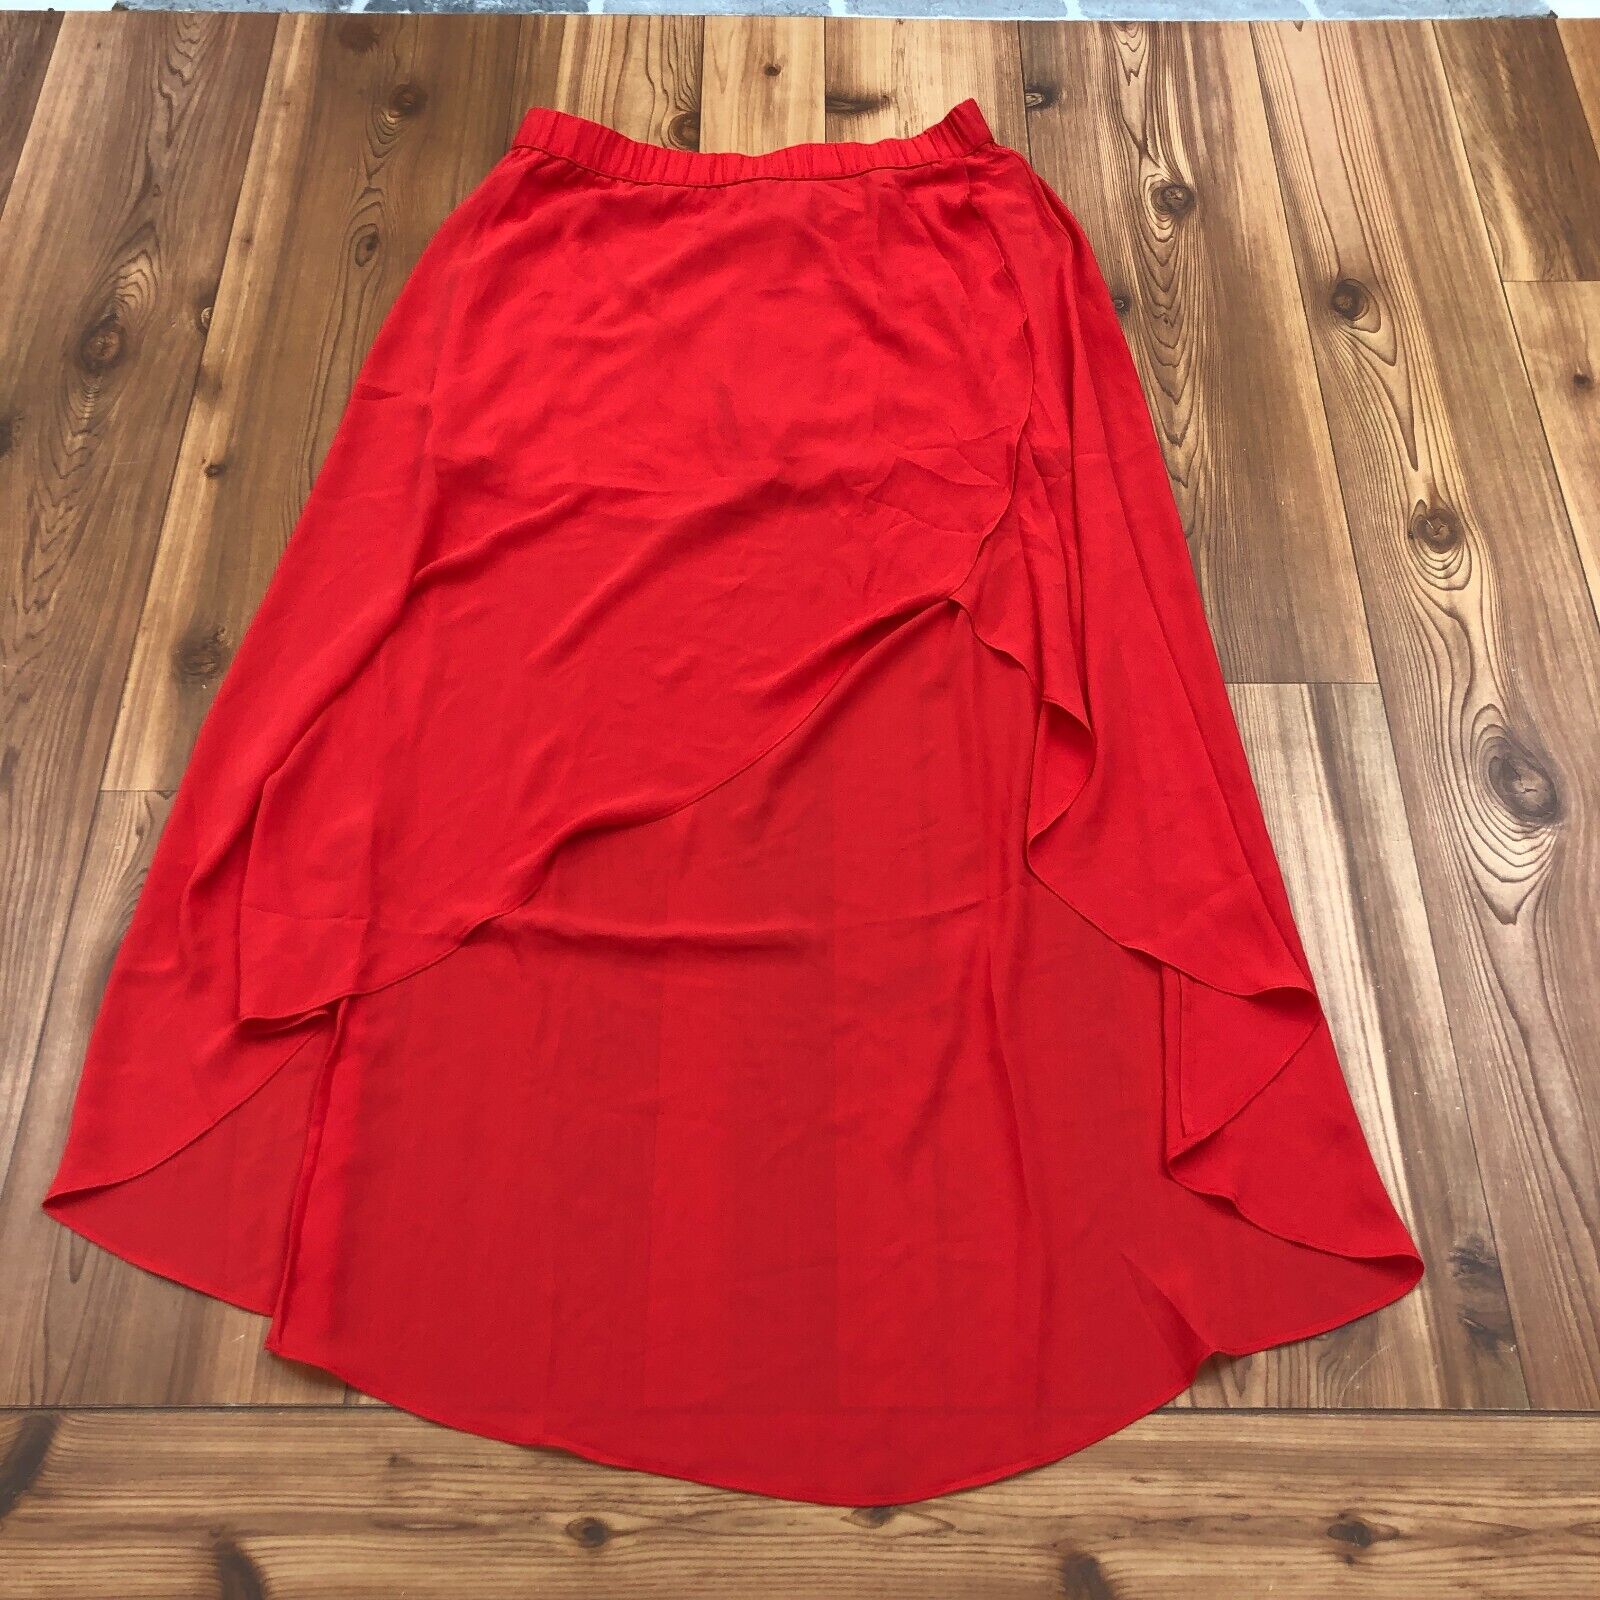 NEW Cache Red Ruffled A Line Long Sheer Elastic Waist Skirt Women Size Medium